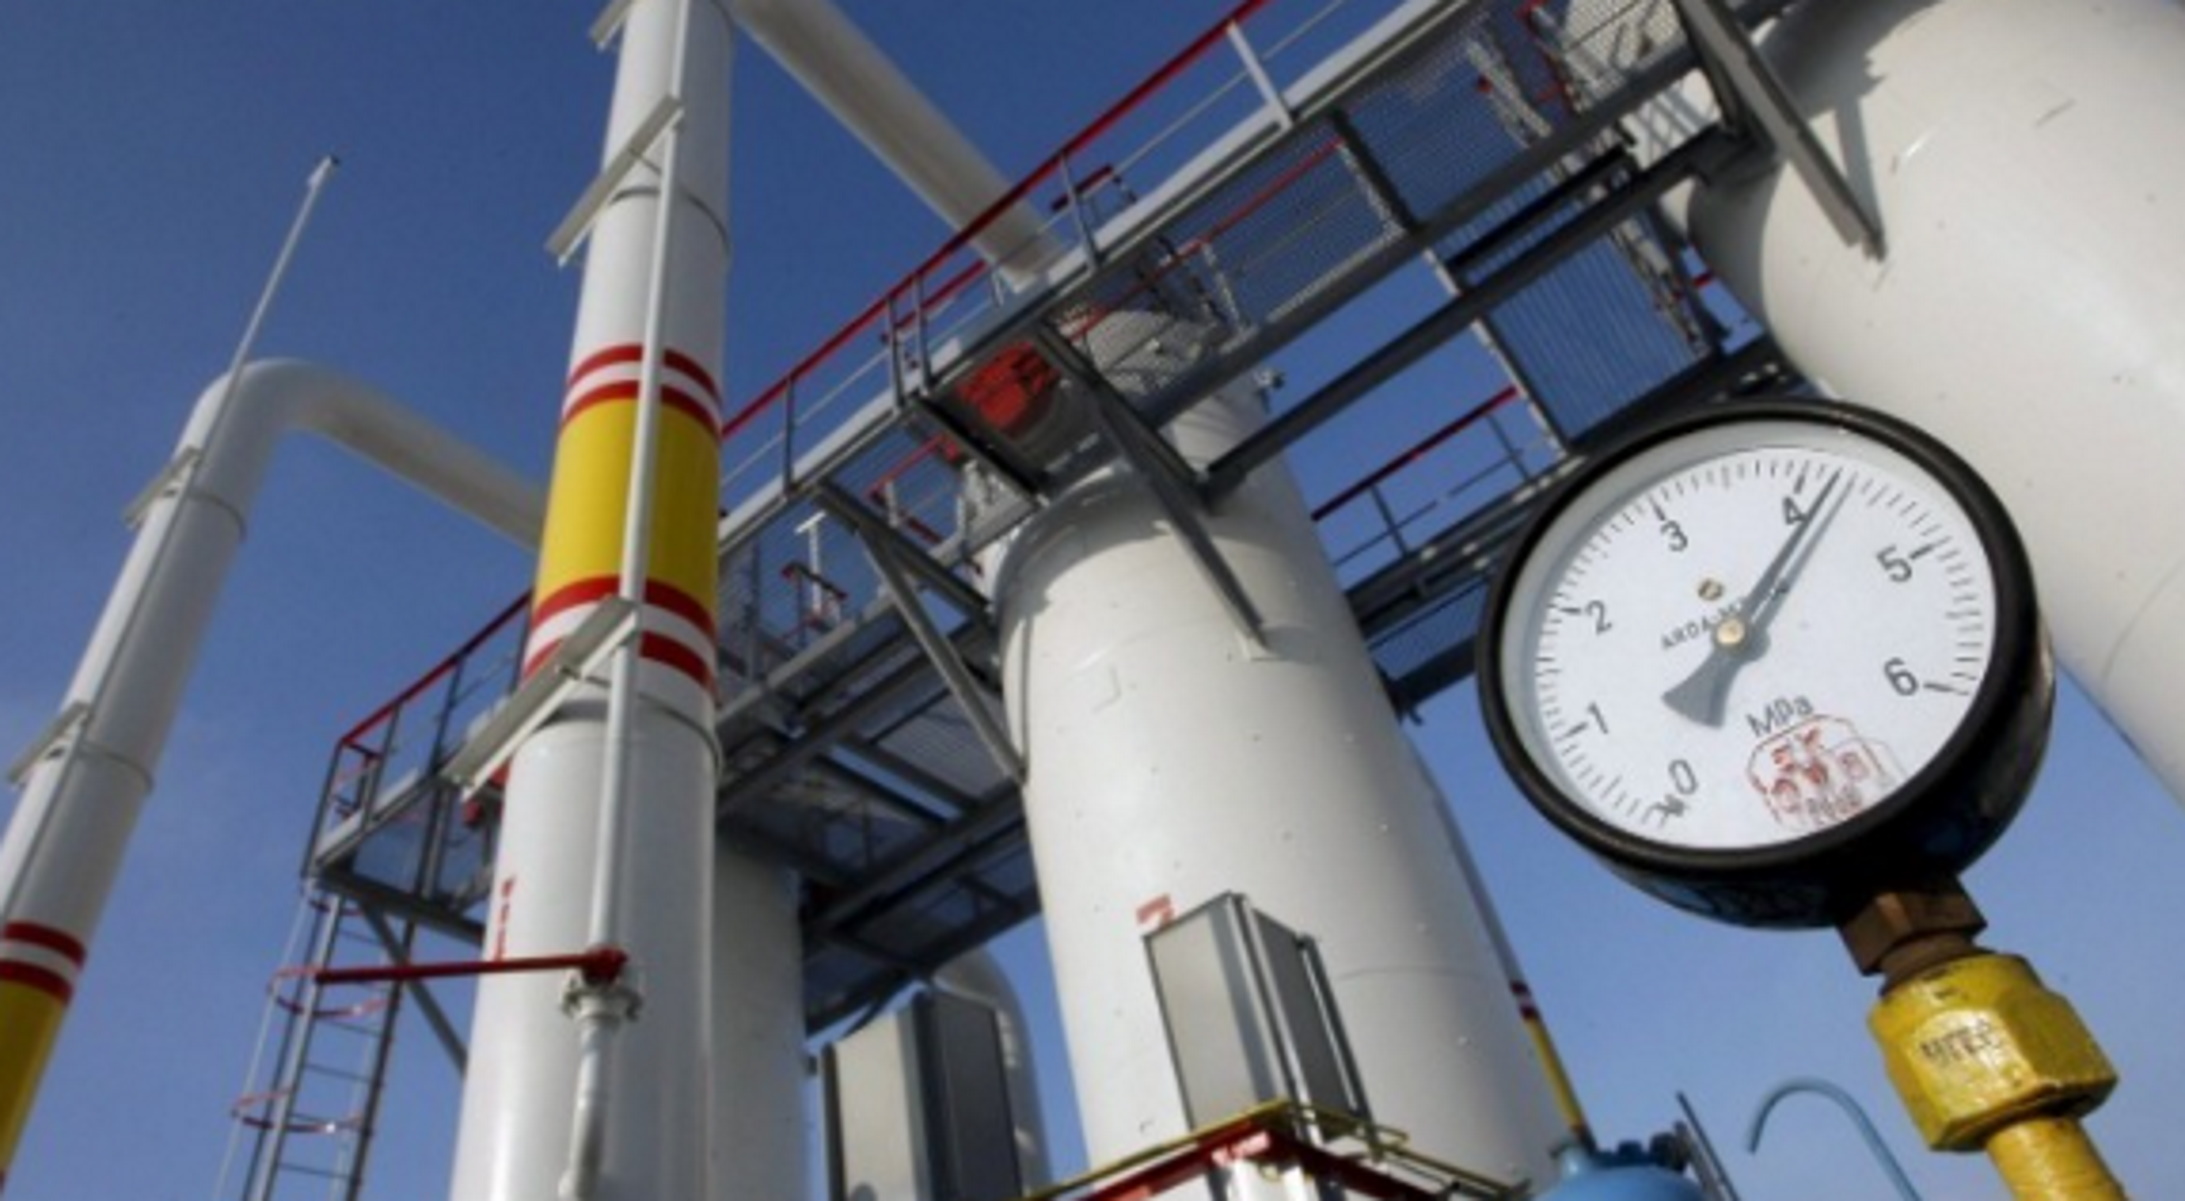 Η Ευρώπη ψήφισε μείωση φυσικού αερίου κατά 15% τον χειμώνα – Τι προβλέπεται σε έκτακτη ανάγκη